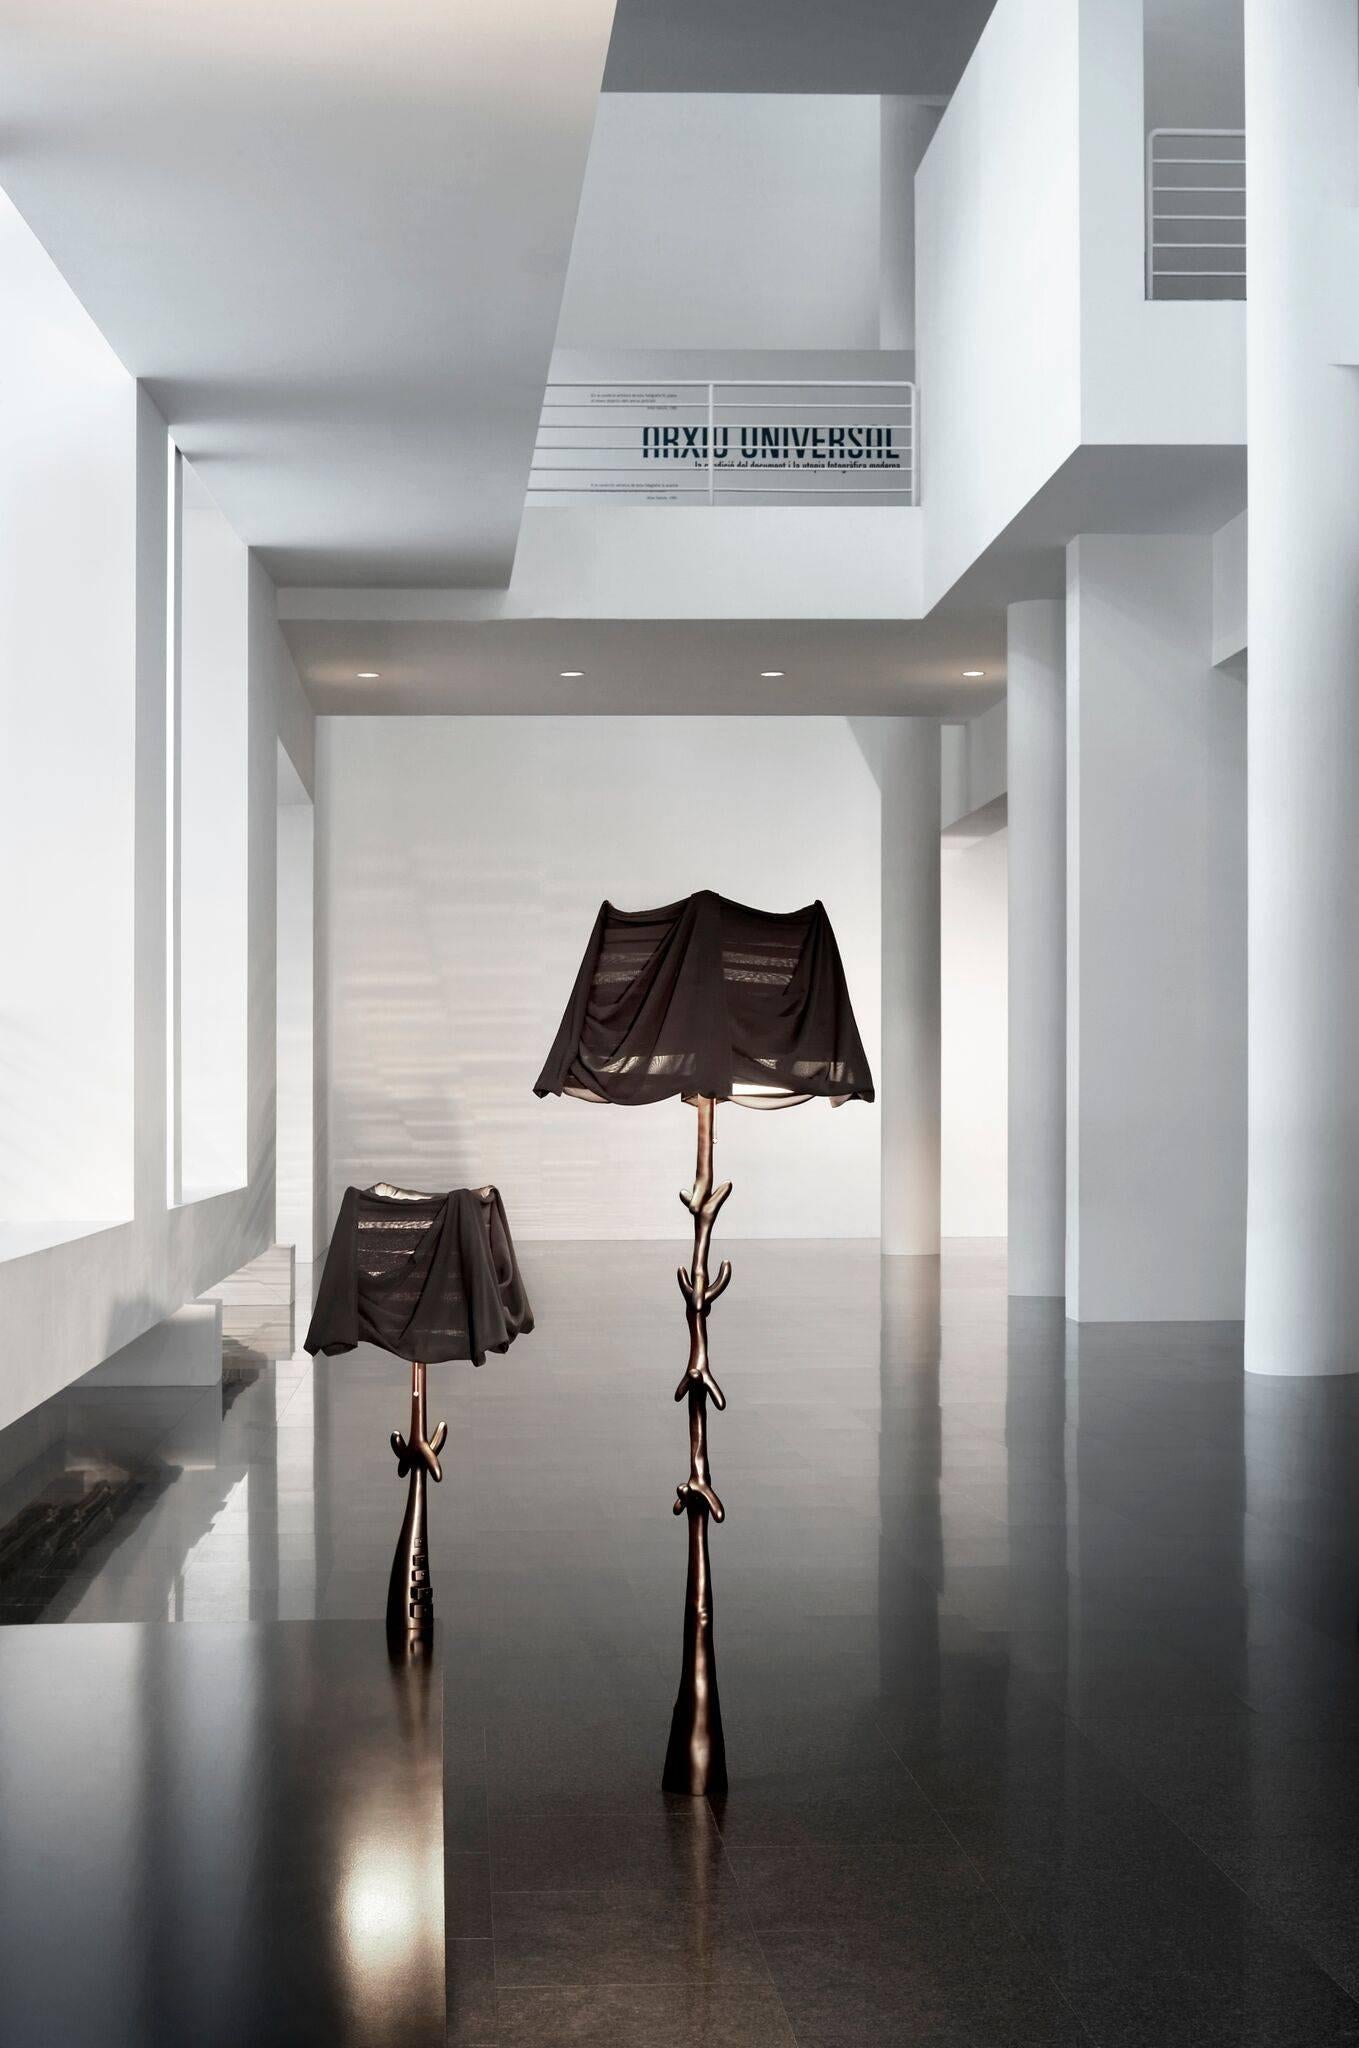 Lampe Muletas Limited Edition conçue par Salvador Dali et fabriquée par BD furniture à Barcelone.

Édition limitée
Bois de tilleul teinté satiné en noir.
Abat-jour en mousseline noire transparente.

Des matériaux raffinés et une fabrication